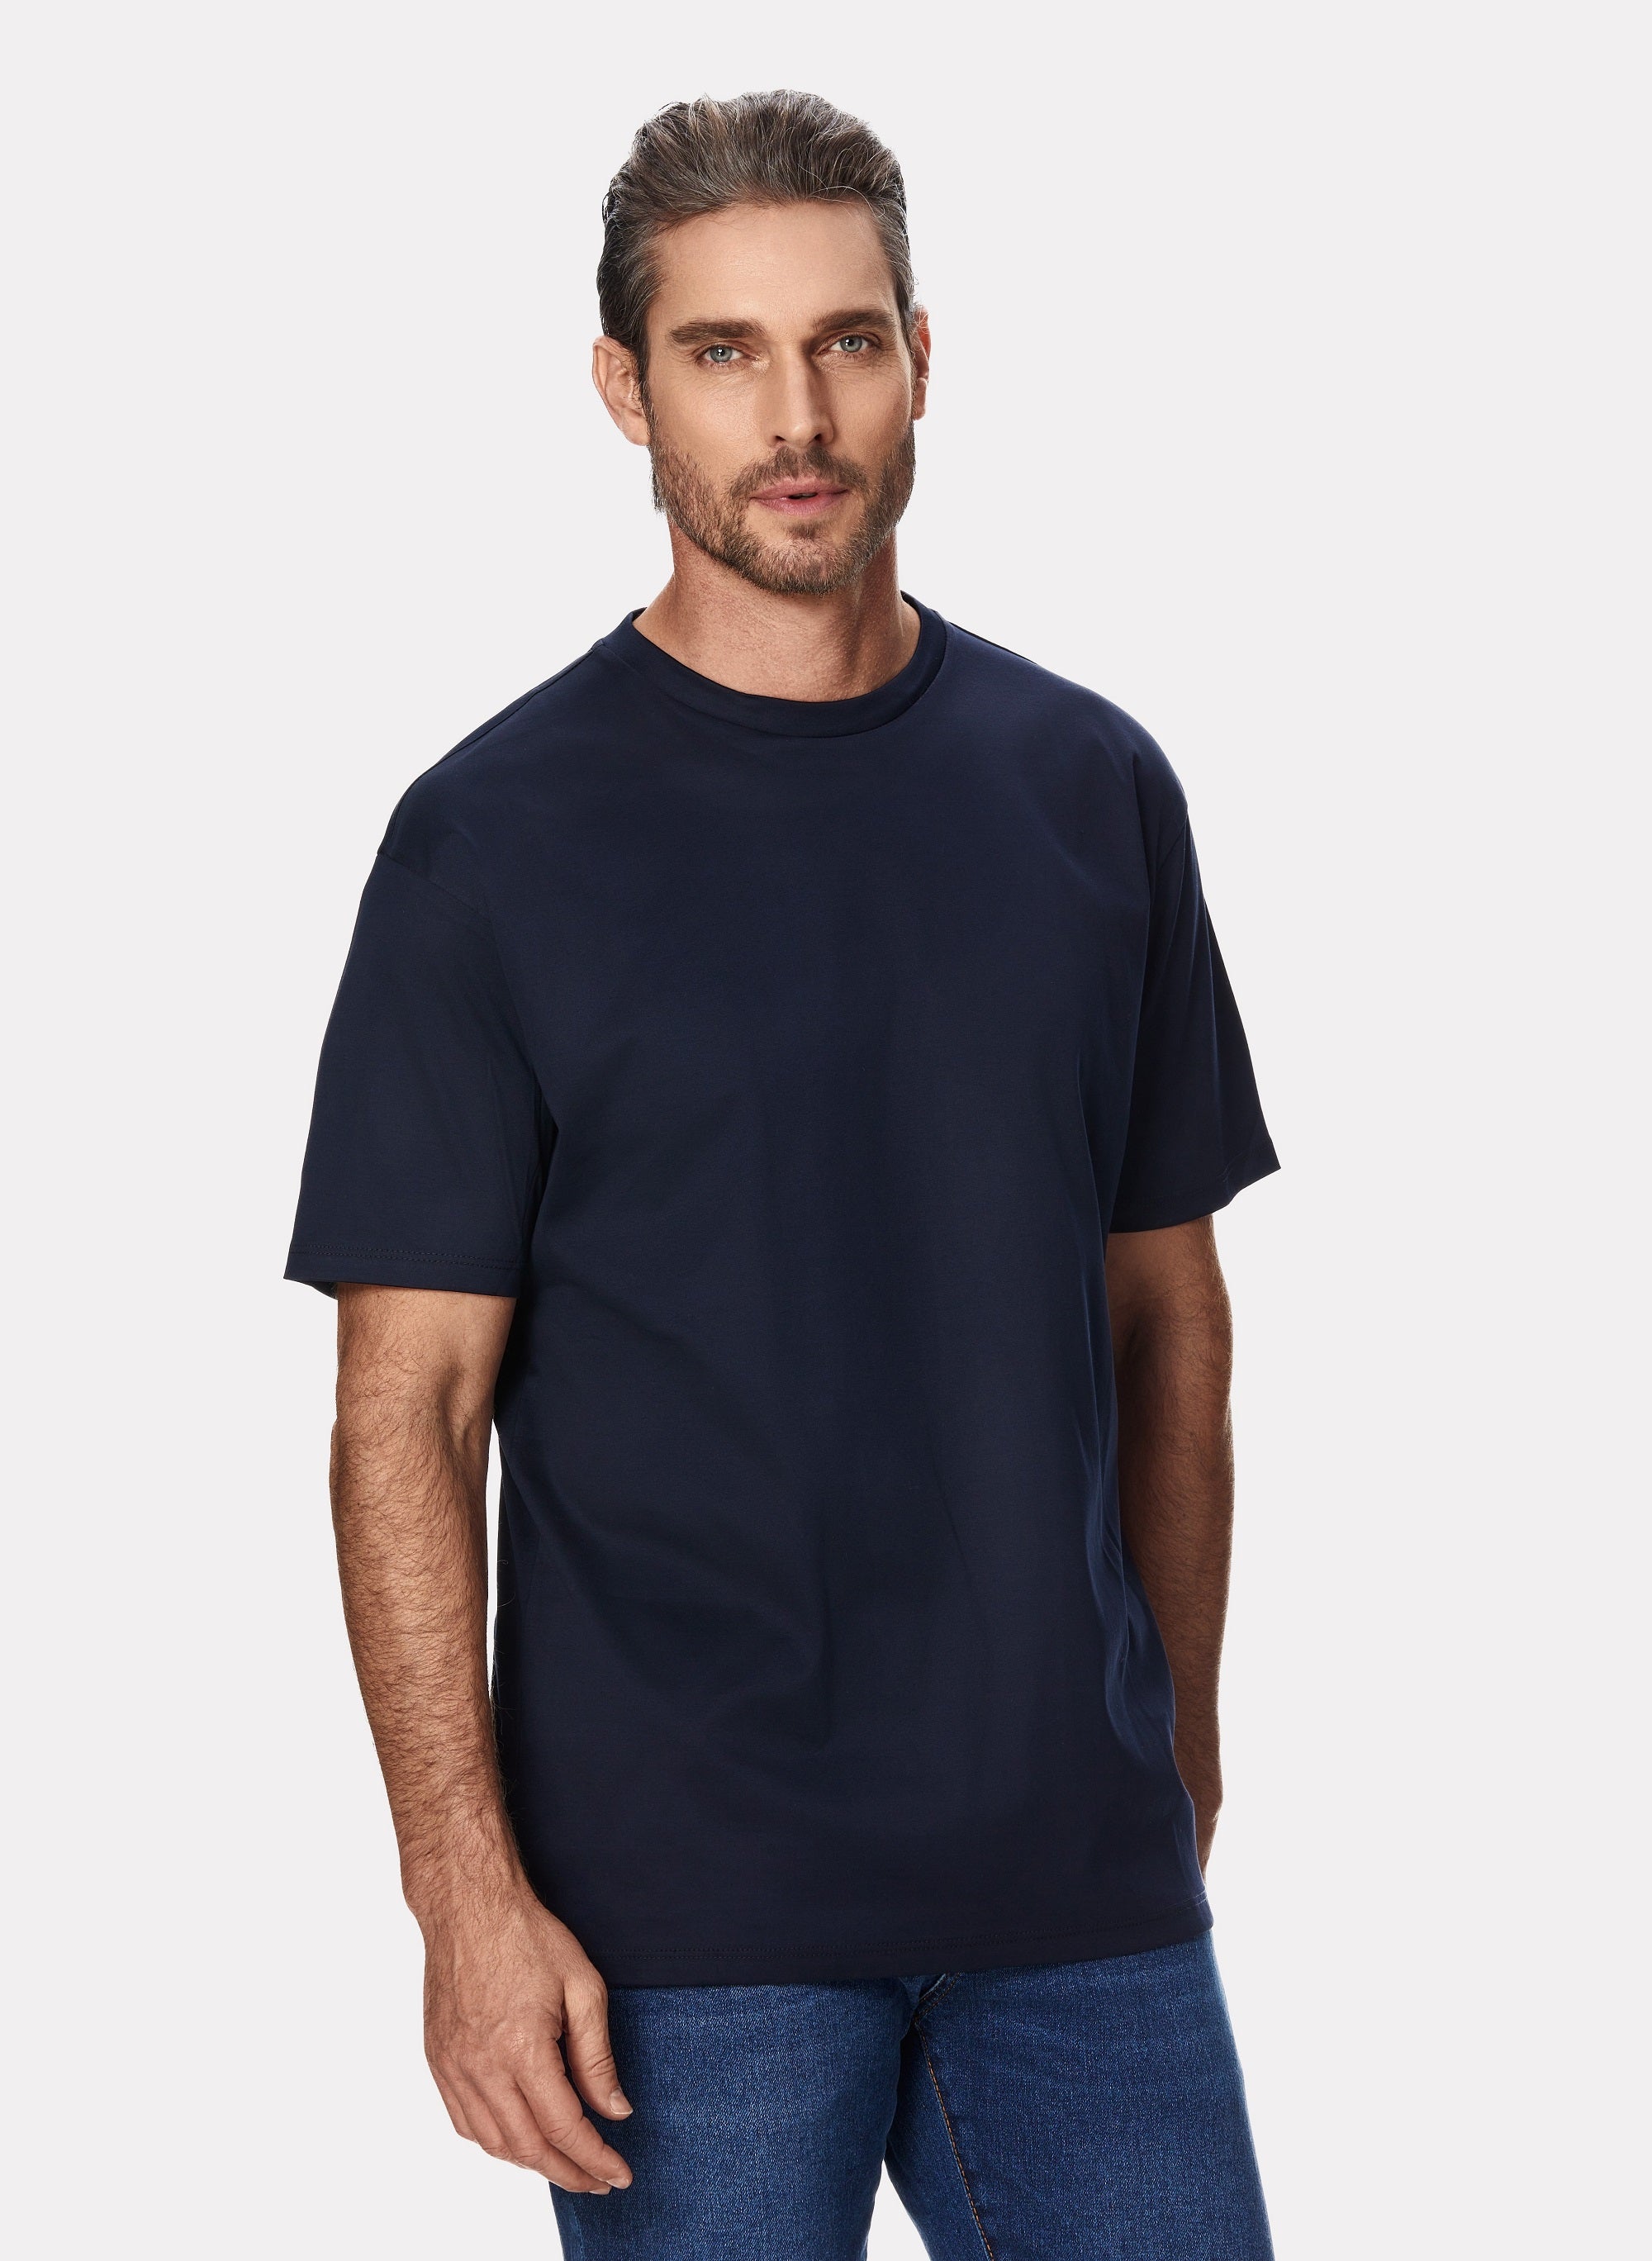 T-shirt in cotone blu navy con ottagono